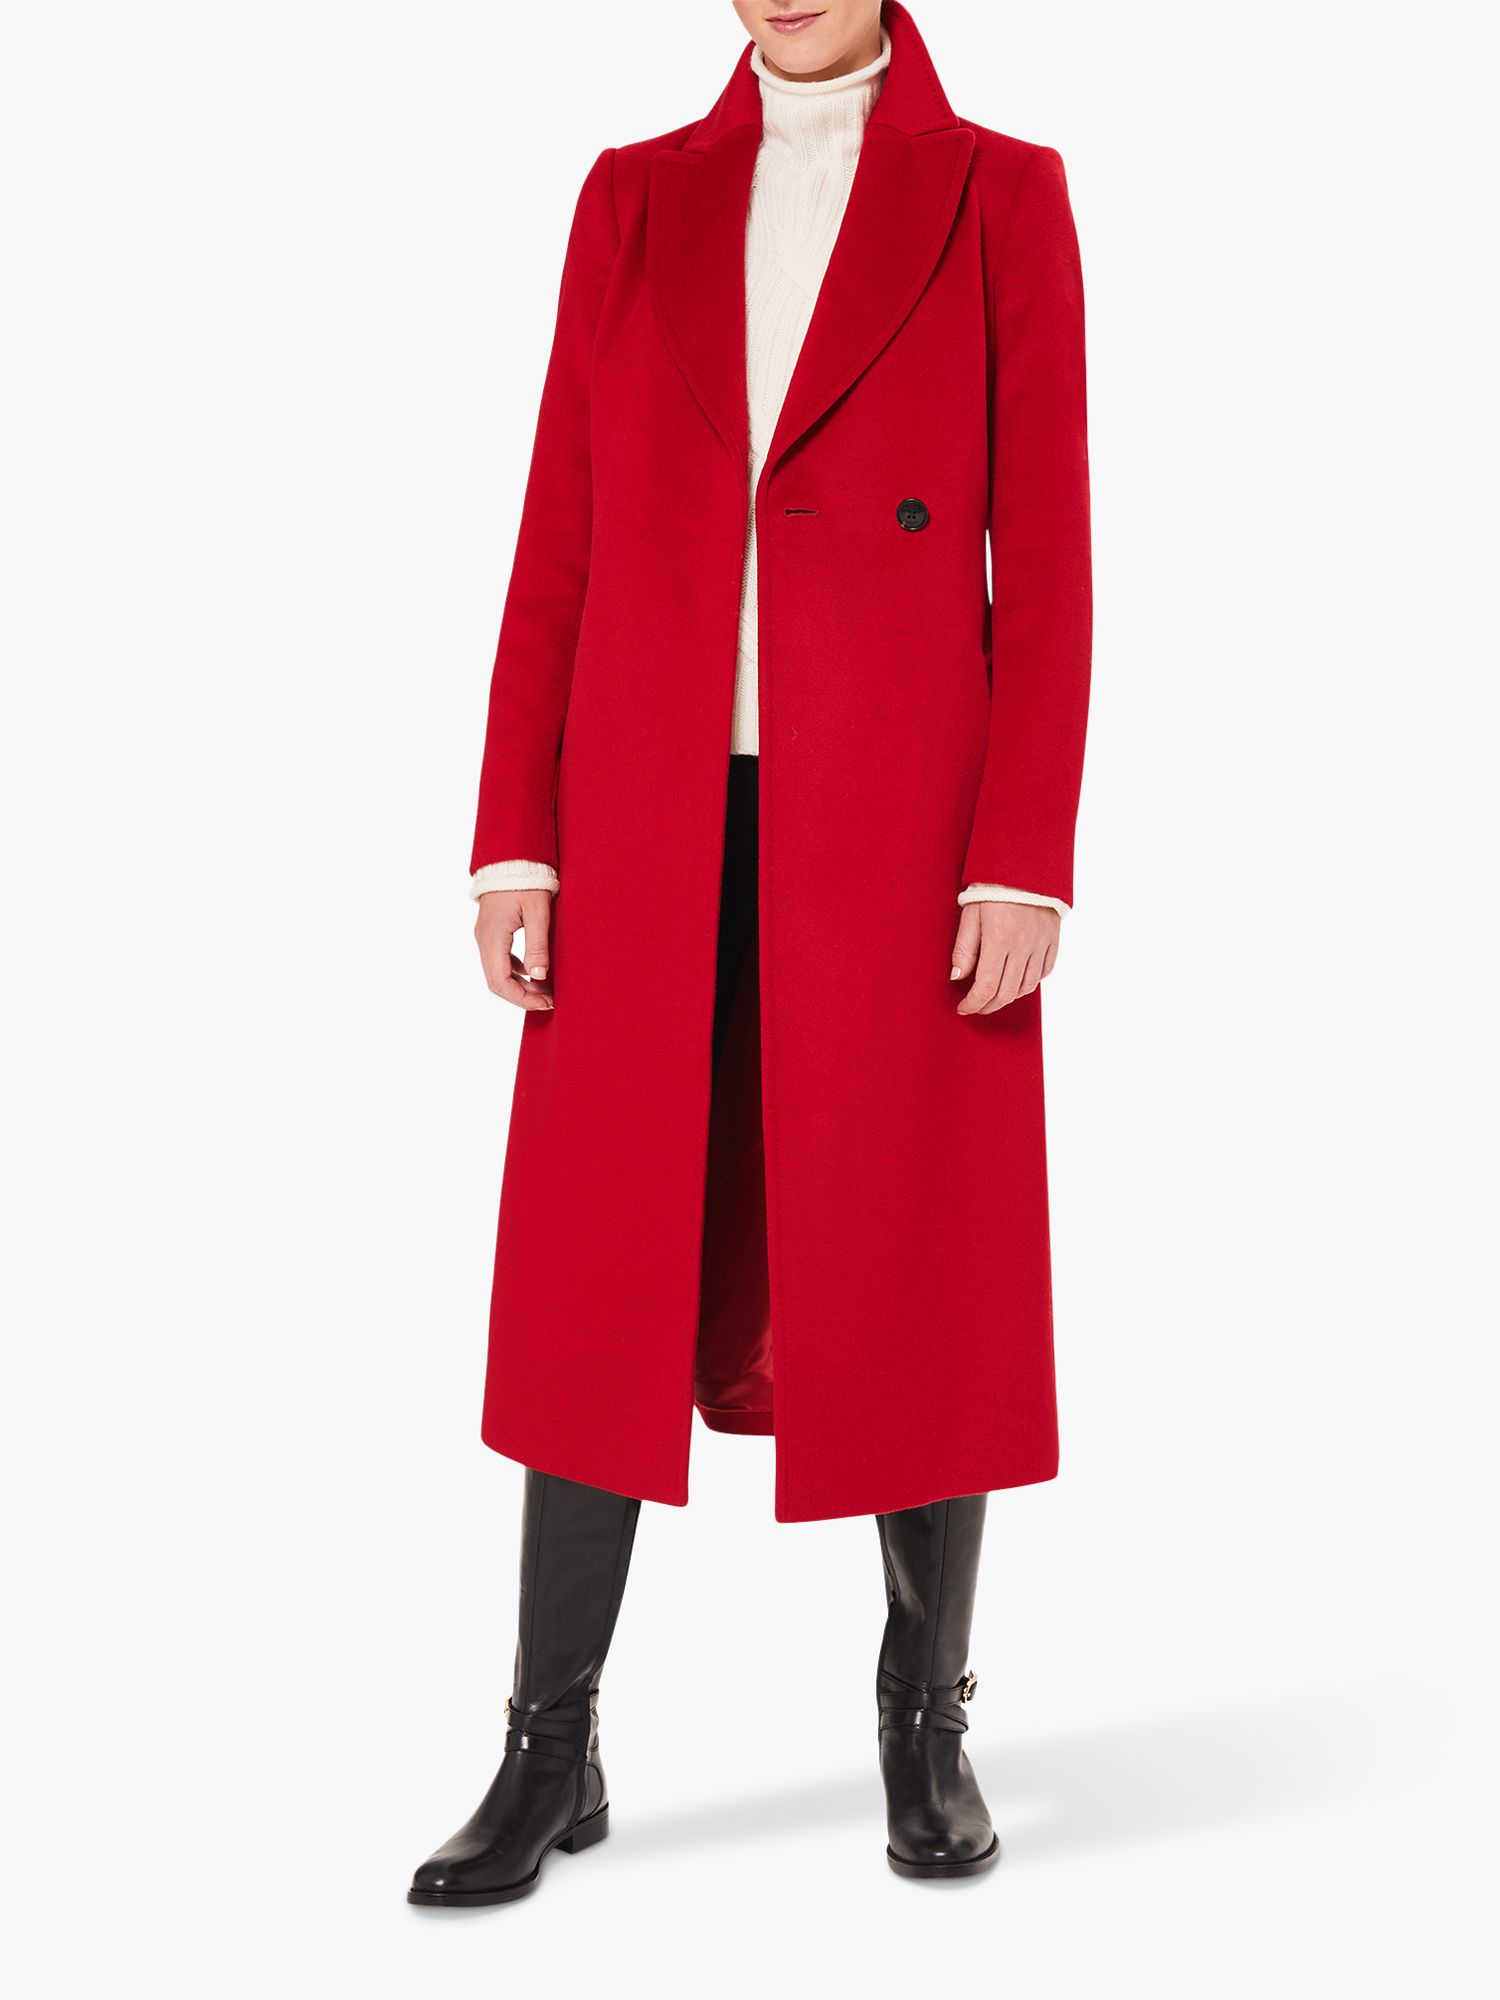 Hobbs Olivia Wool Coat, Red